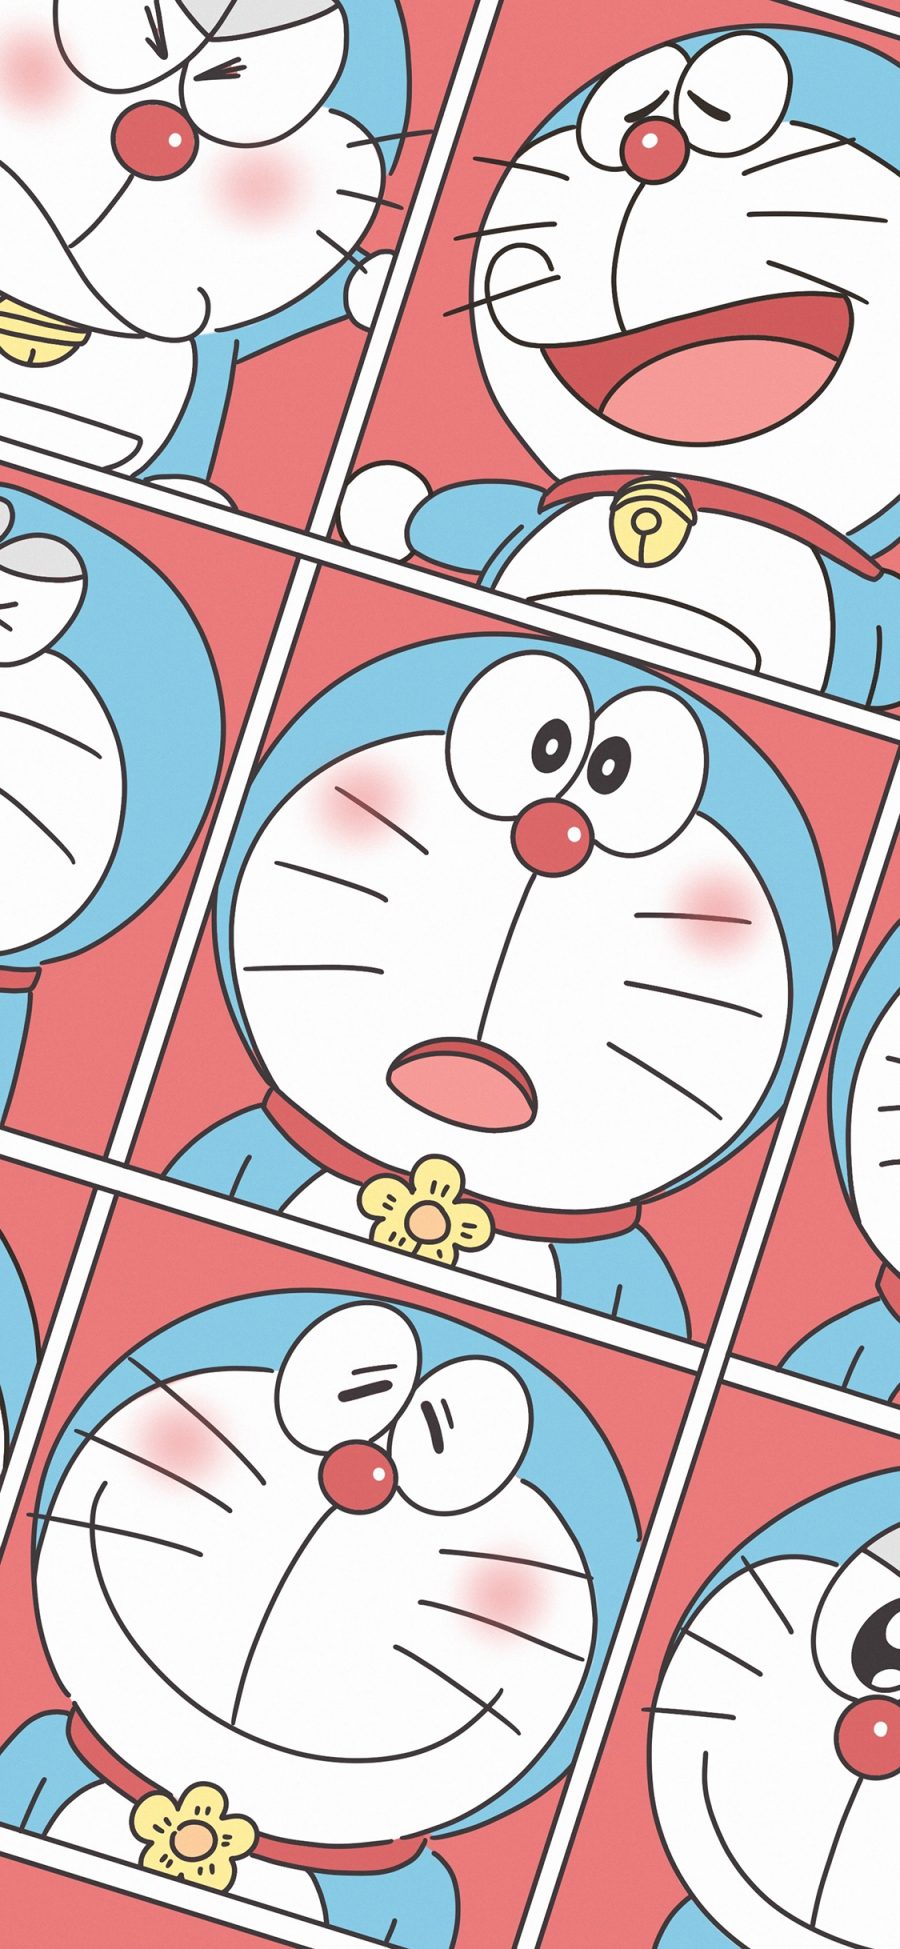 [2436×1125]哆啦A梦 叮当猫 日本 动画 表情 苹果手机动漫壁纸图片